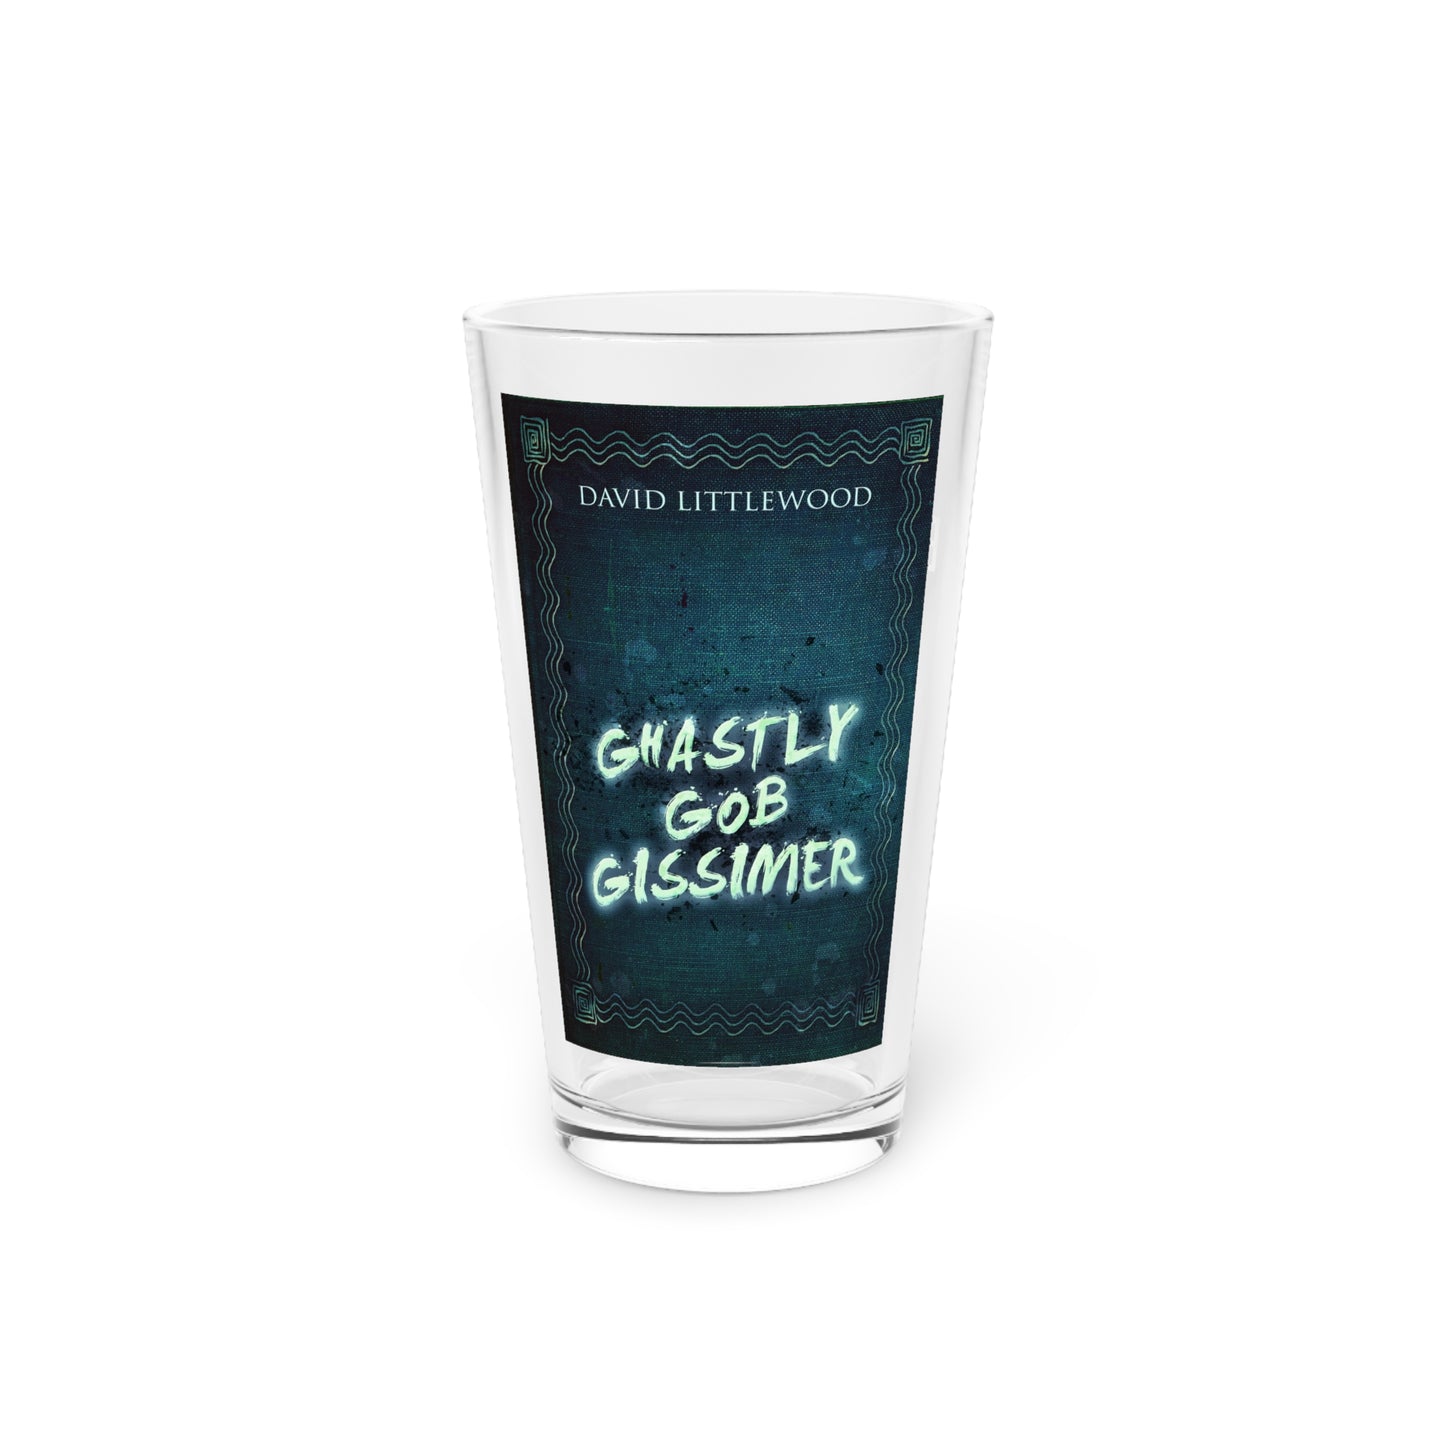 Ghastly Gob Gissimer - Pint Glass